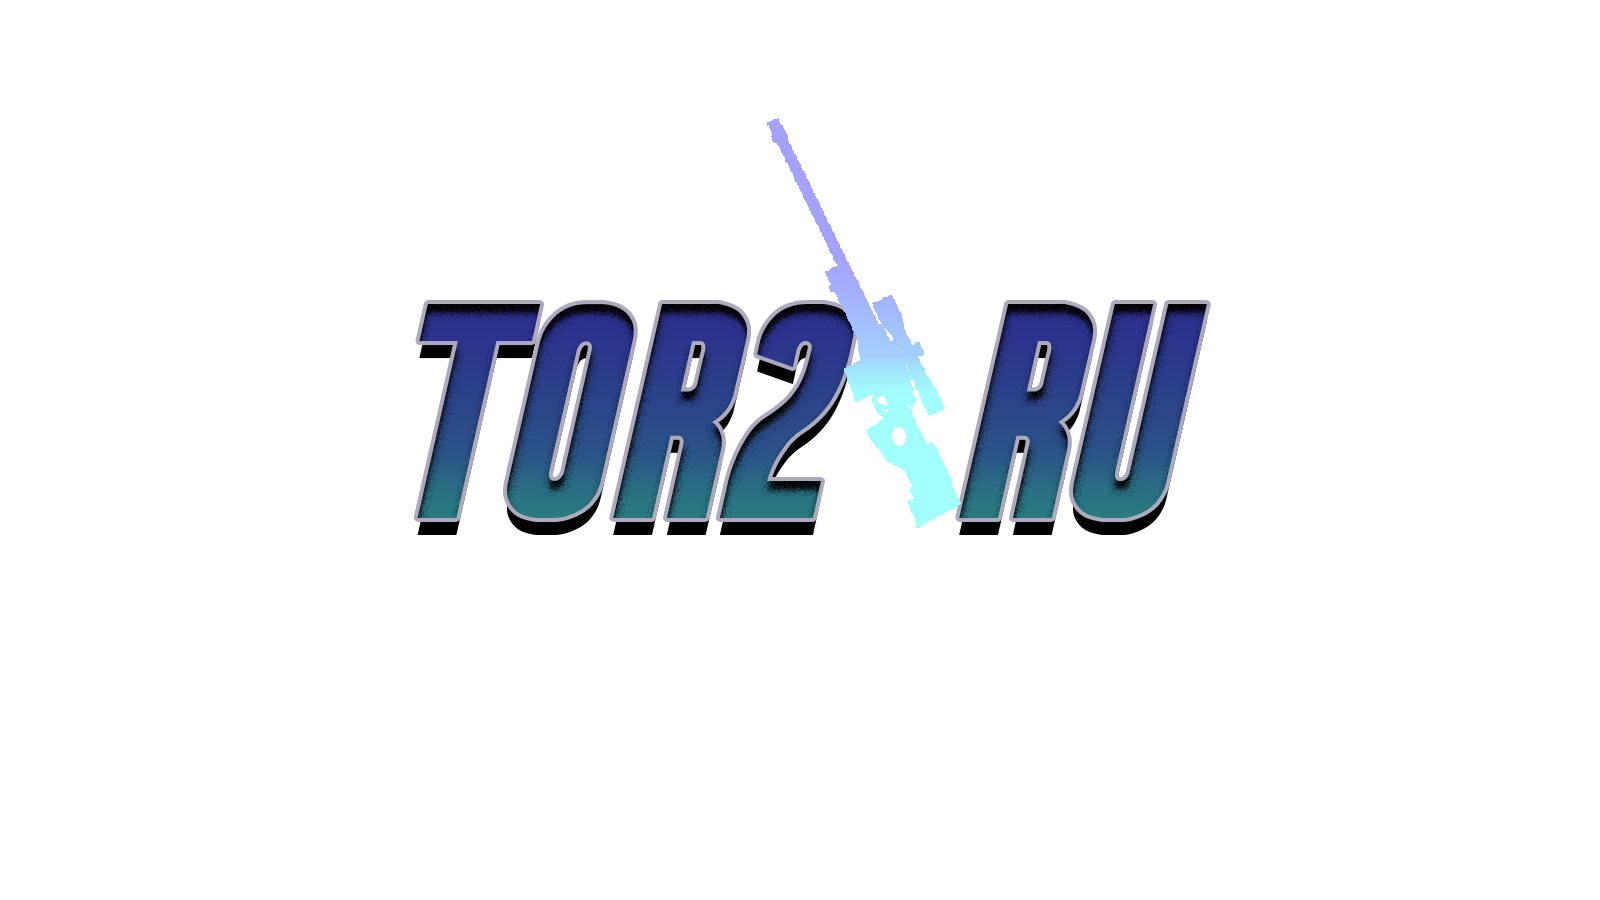 Tor2.ru